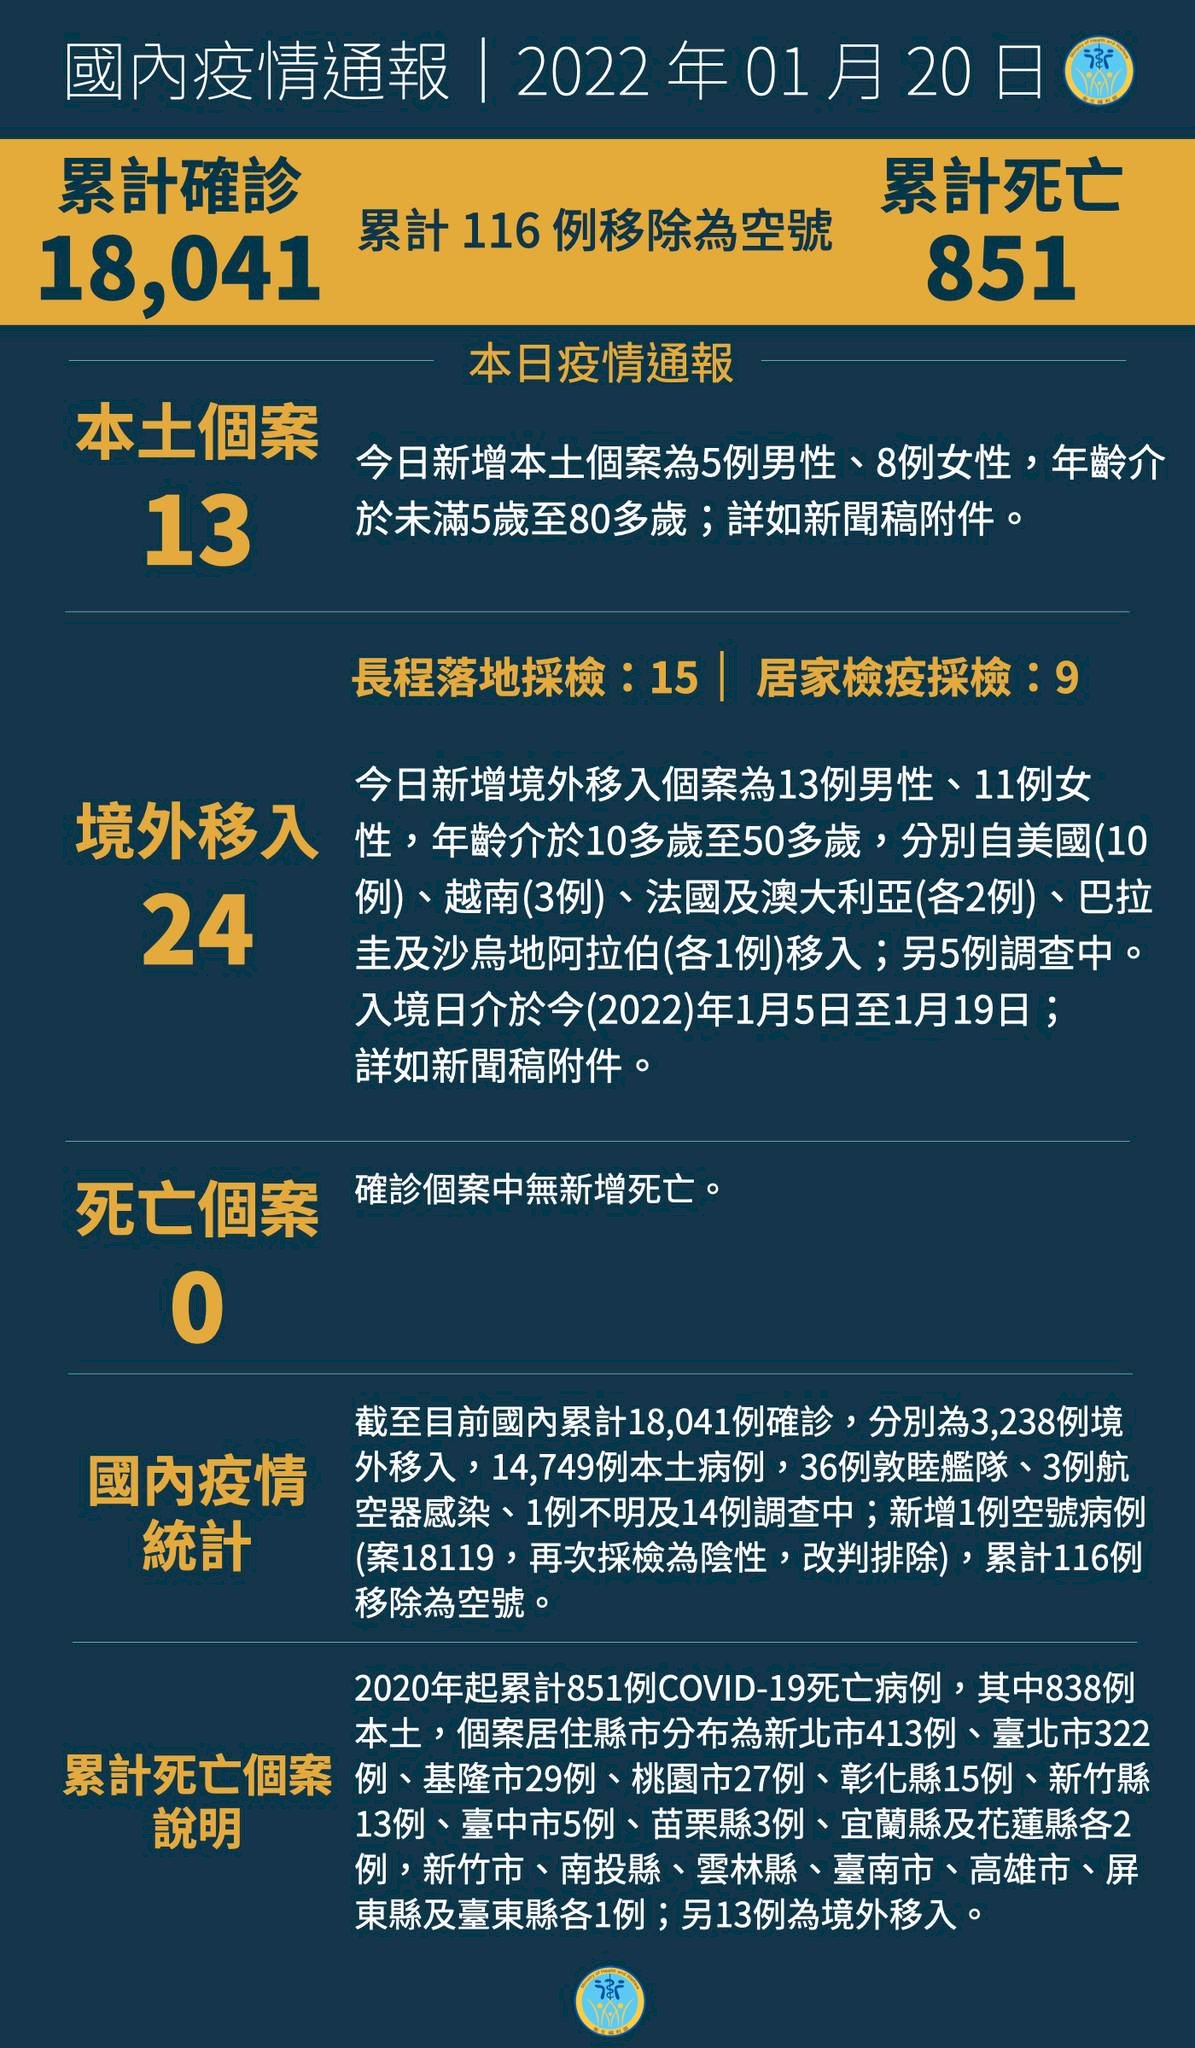 20/1, Đài Loan ghi nhận thêm 13 ca nhiễm trong nước, 24 ca từ nước ngoài, thêm 2 cụm lây nhiễm cần làm rõ nguồn lây